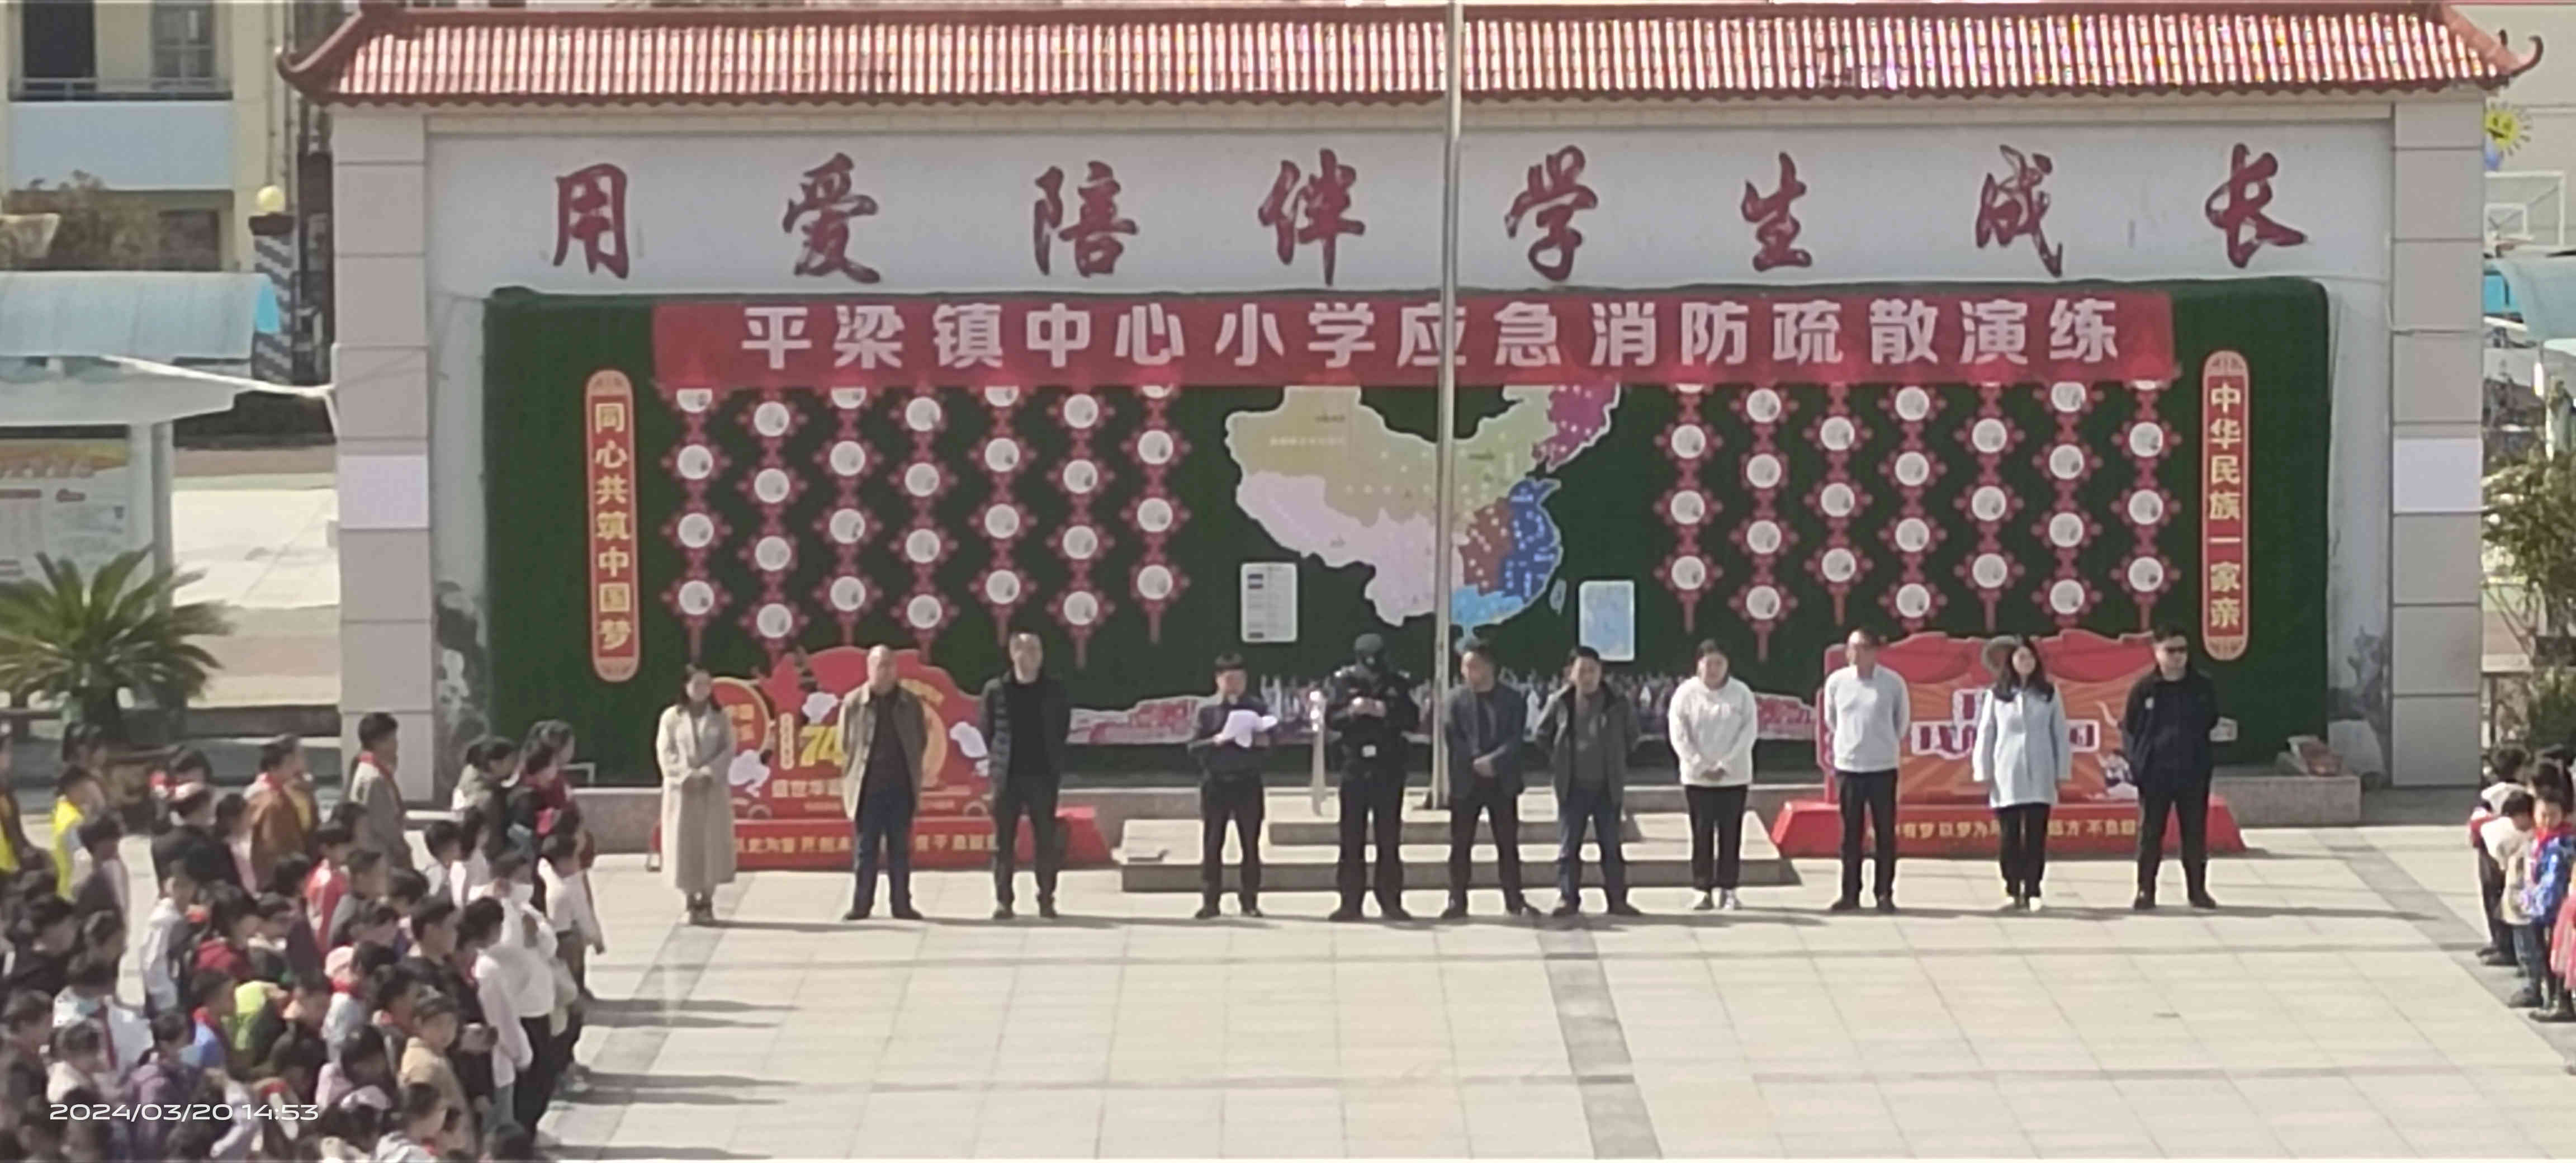 汉阴县平梁镇中心小学开展应急消防疏散演练